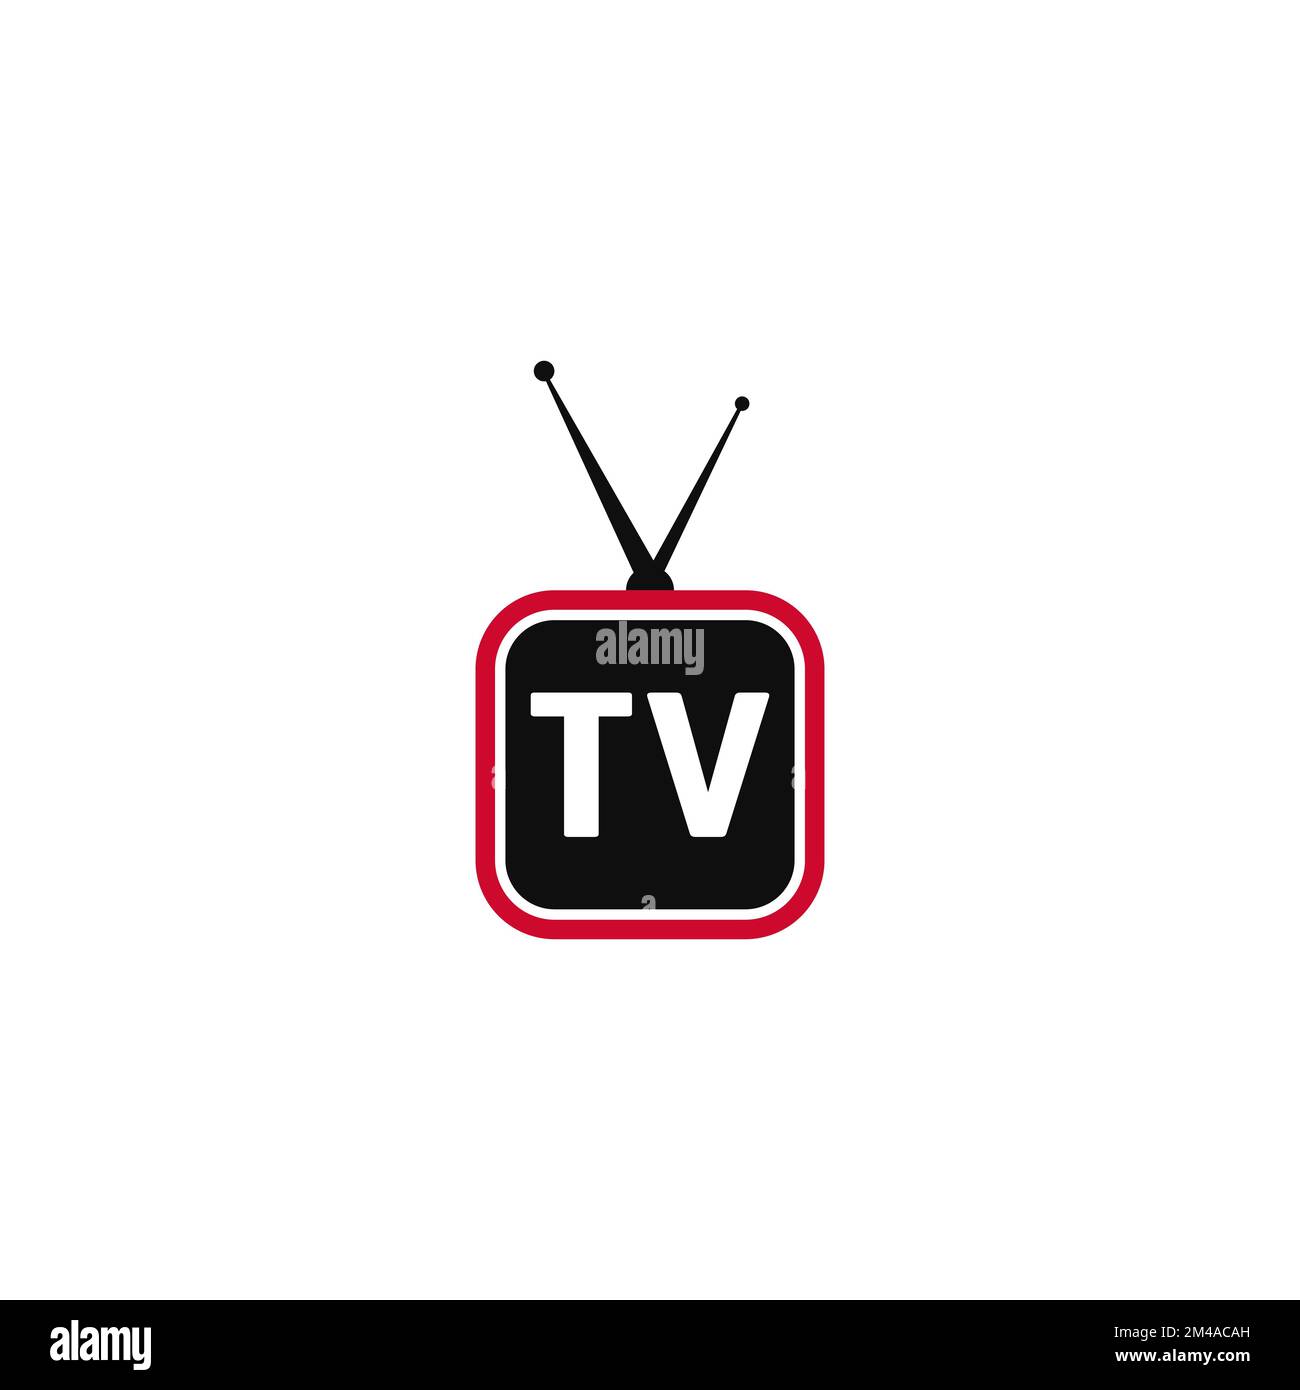 Tv logo vector vectors Stock Vector Images - Alamy